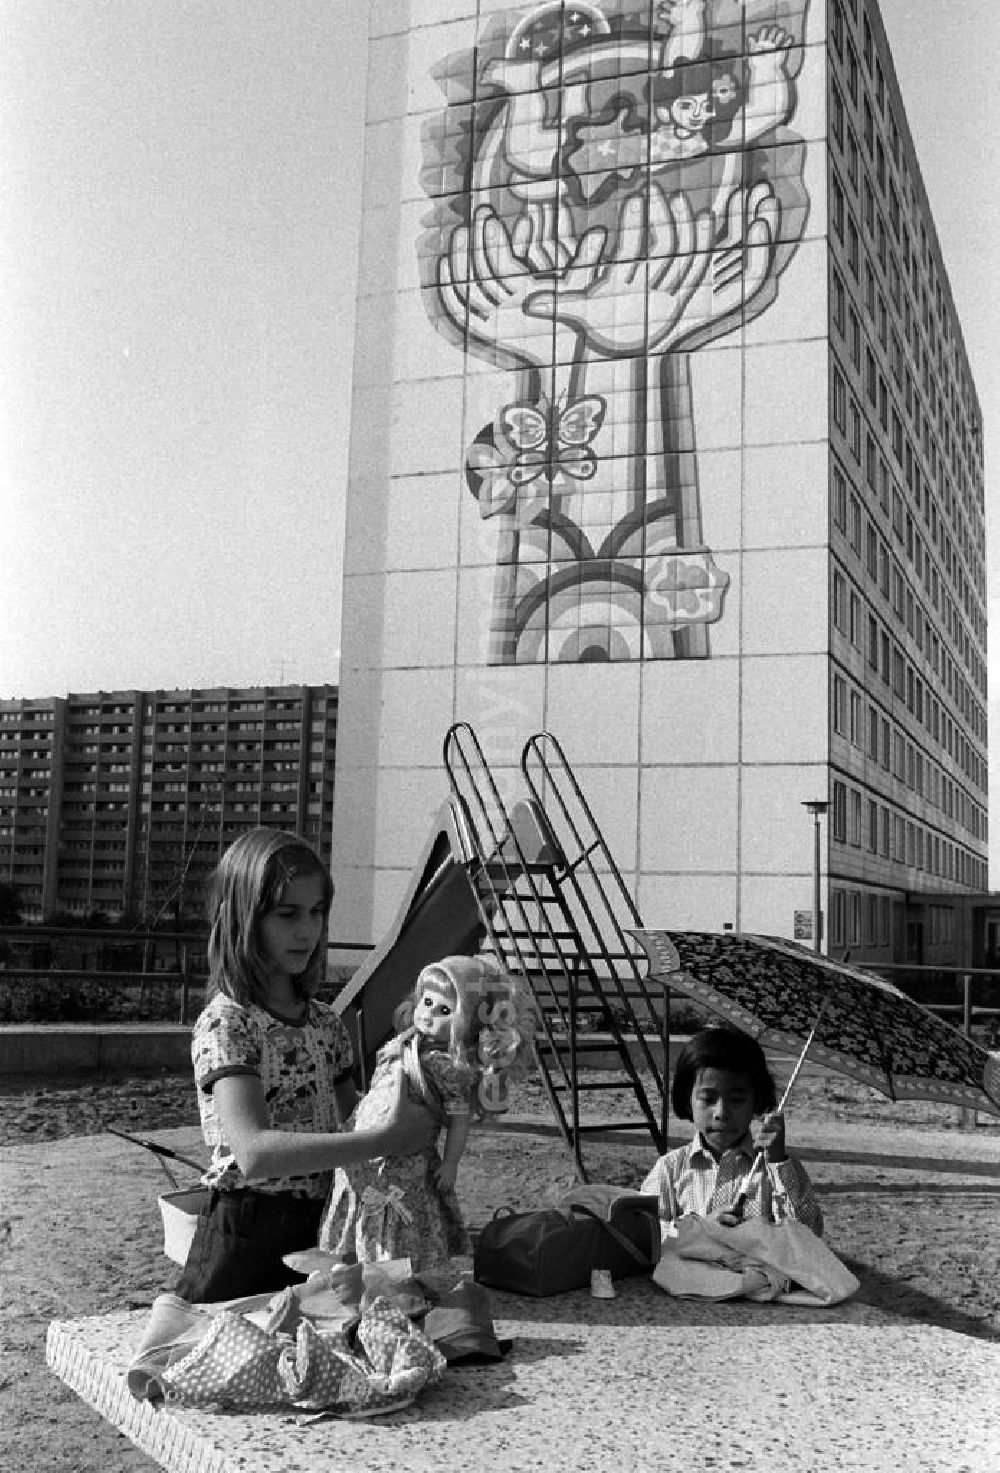 GDR picture archive: Berlin - Mädchen spielen mit Puppen auf einem Spielplatz an einem Neubaugebiet in Berlin. Ein Mädchen hält eine Schirm in der Hand. An der Fassade des elfgeschossigen Wohnhauses im Hintergrund ist ein großflächiges Bild angebracht, das schützende Hände und das Glück der Kinder auf der ganzen Welt symbolisiert.